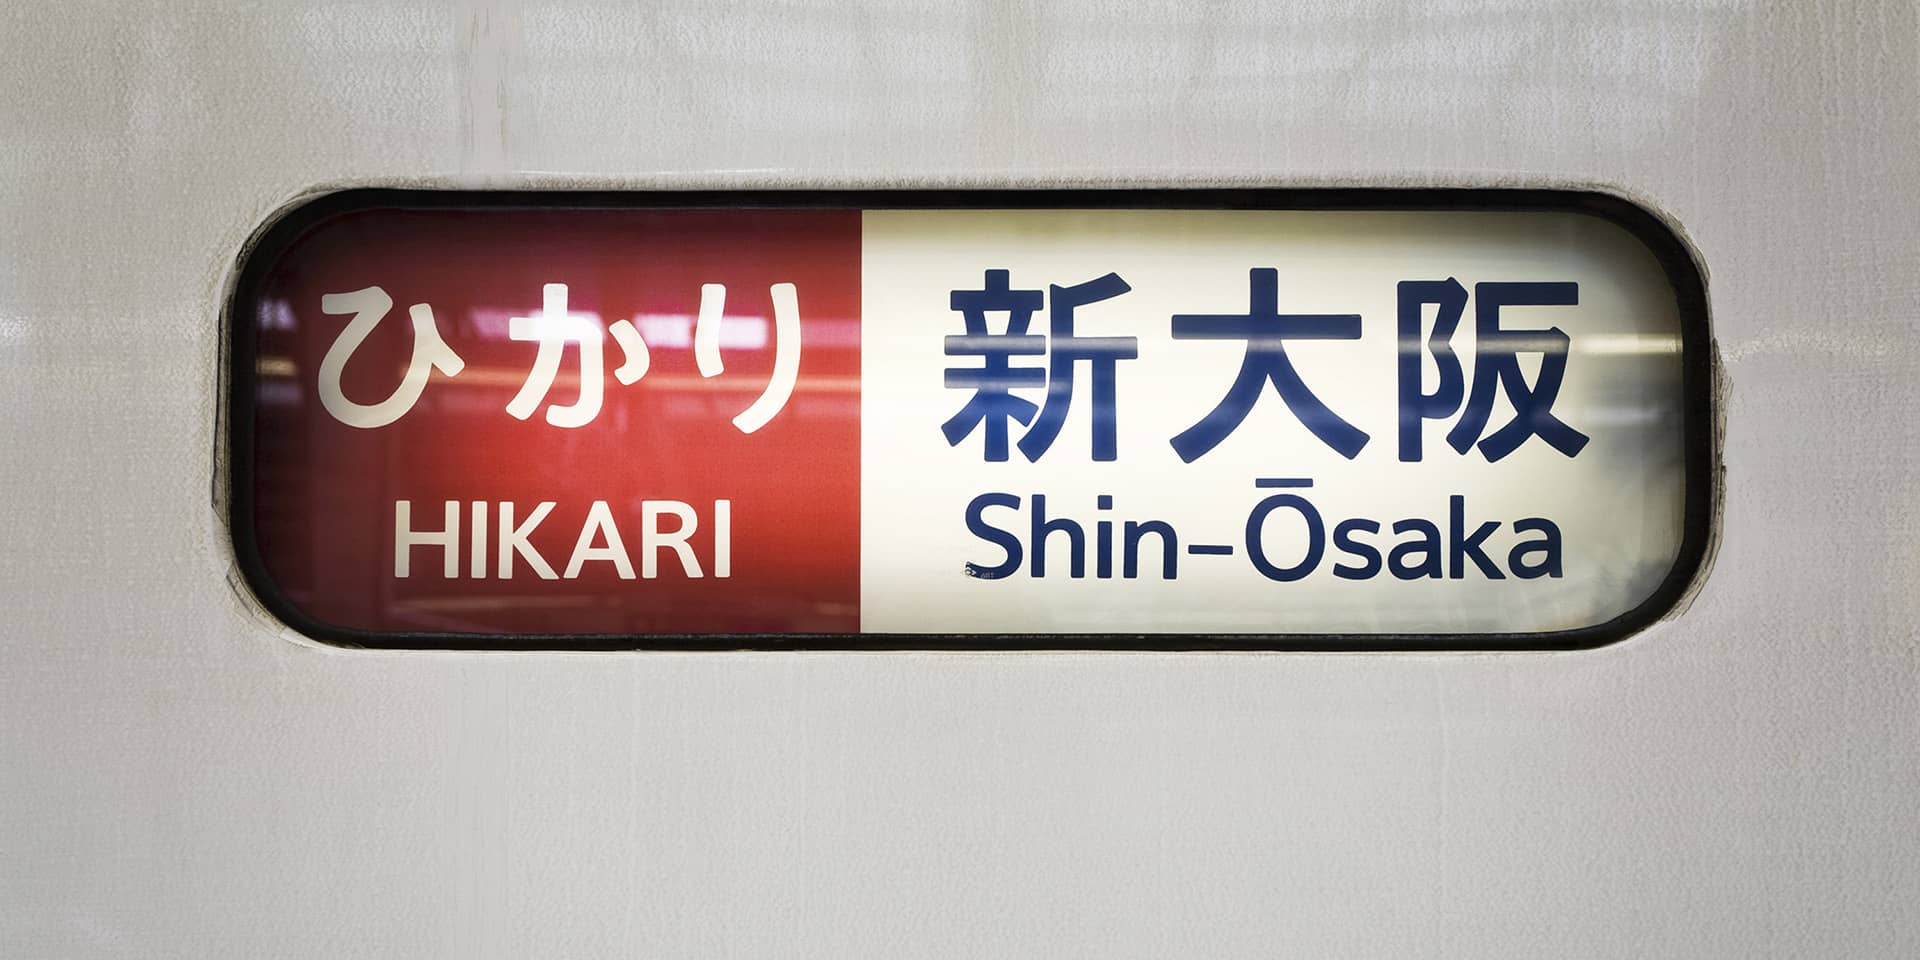 Billede af japansk skilt med skrifttegn - Hikari og Shin-Ösaka